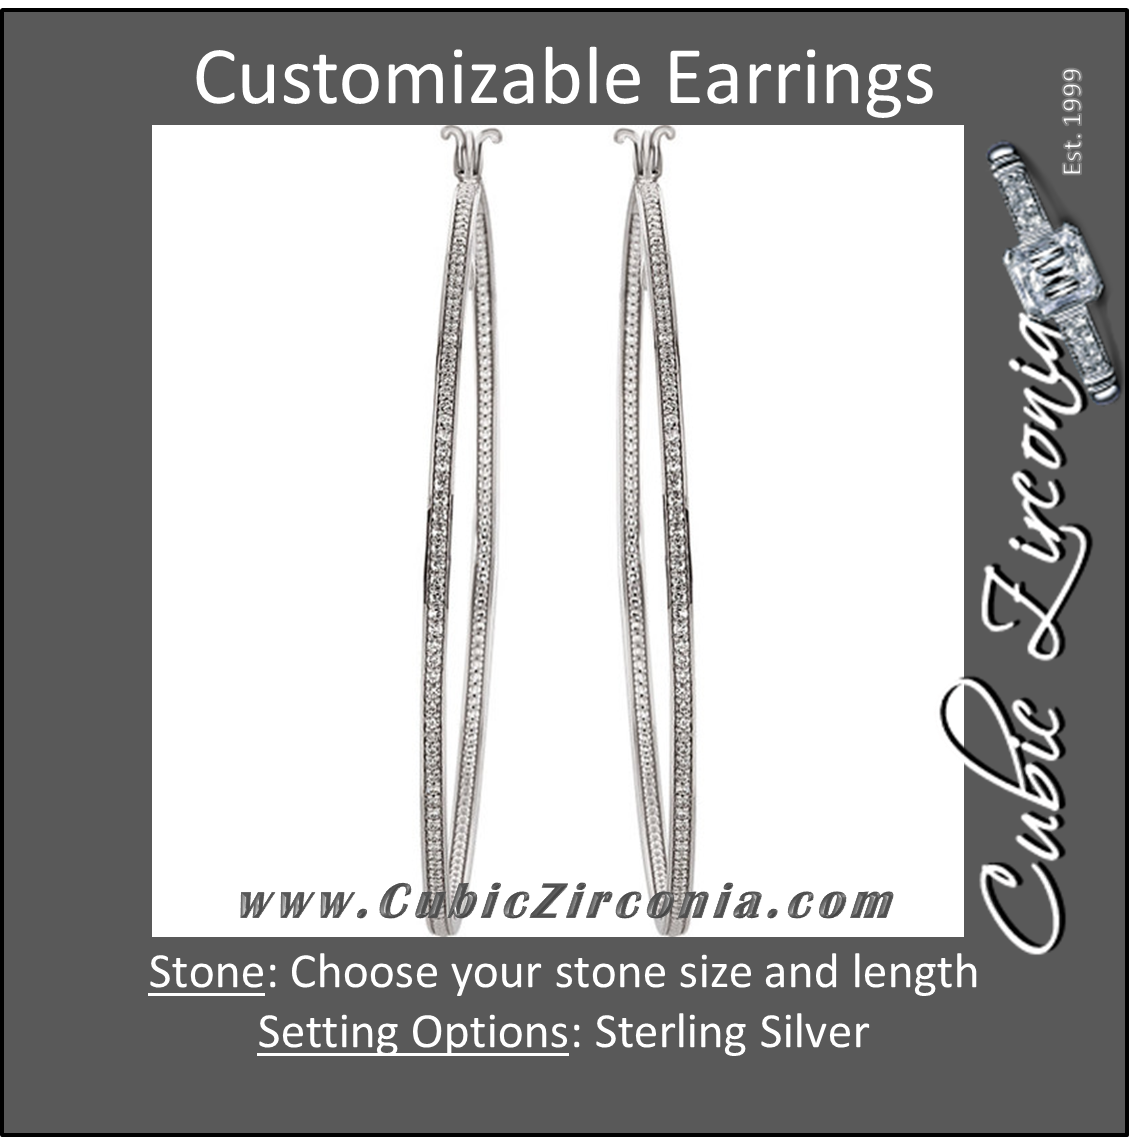 Cubic Zirconia Earrings- 100-stone Customizable Sterling Silver Inside/Outside Hoop CZ Earring Set